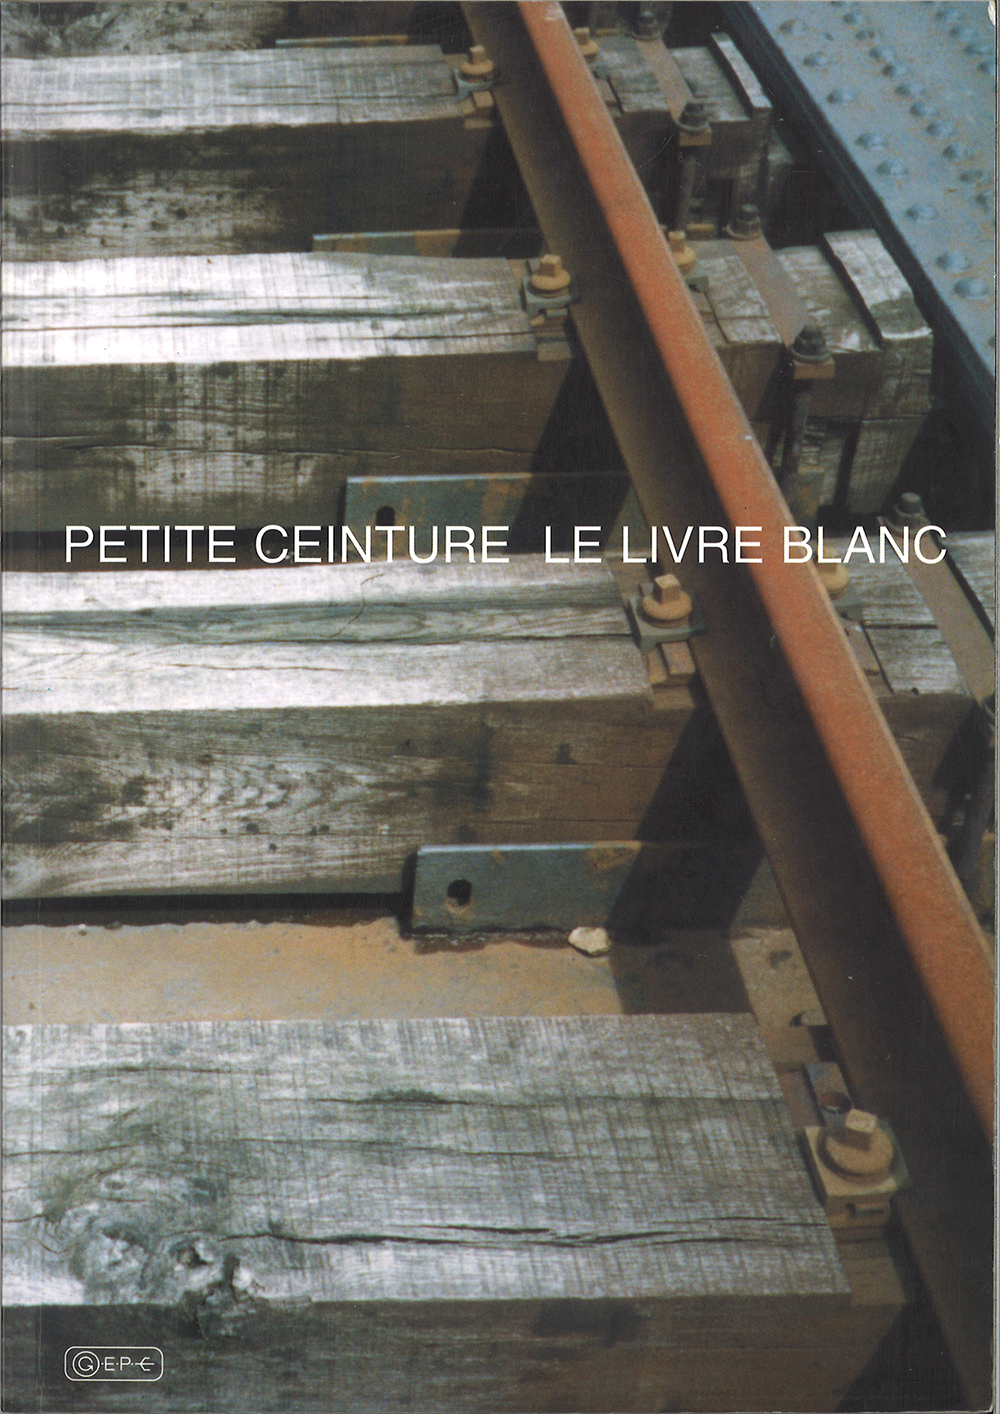 Le livre blanc de la petite ceinture de Paris édition 1997